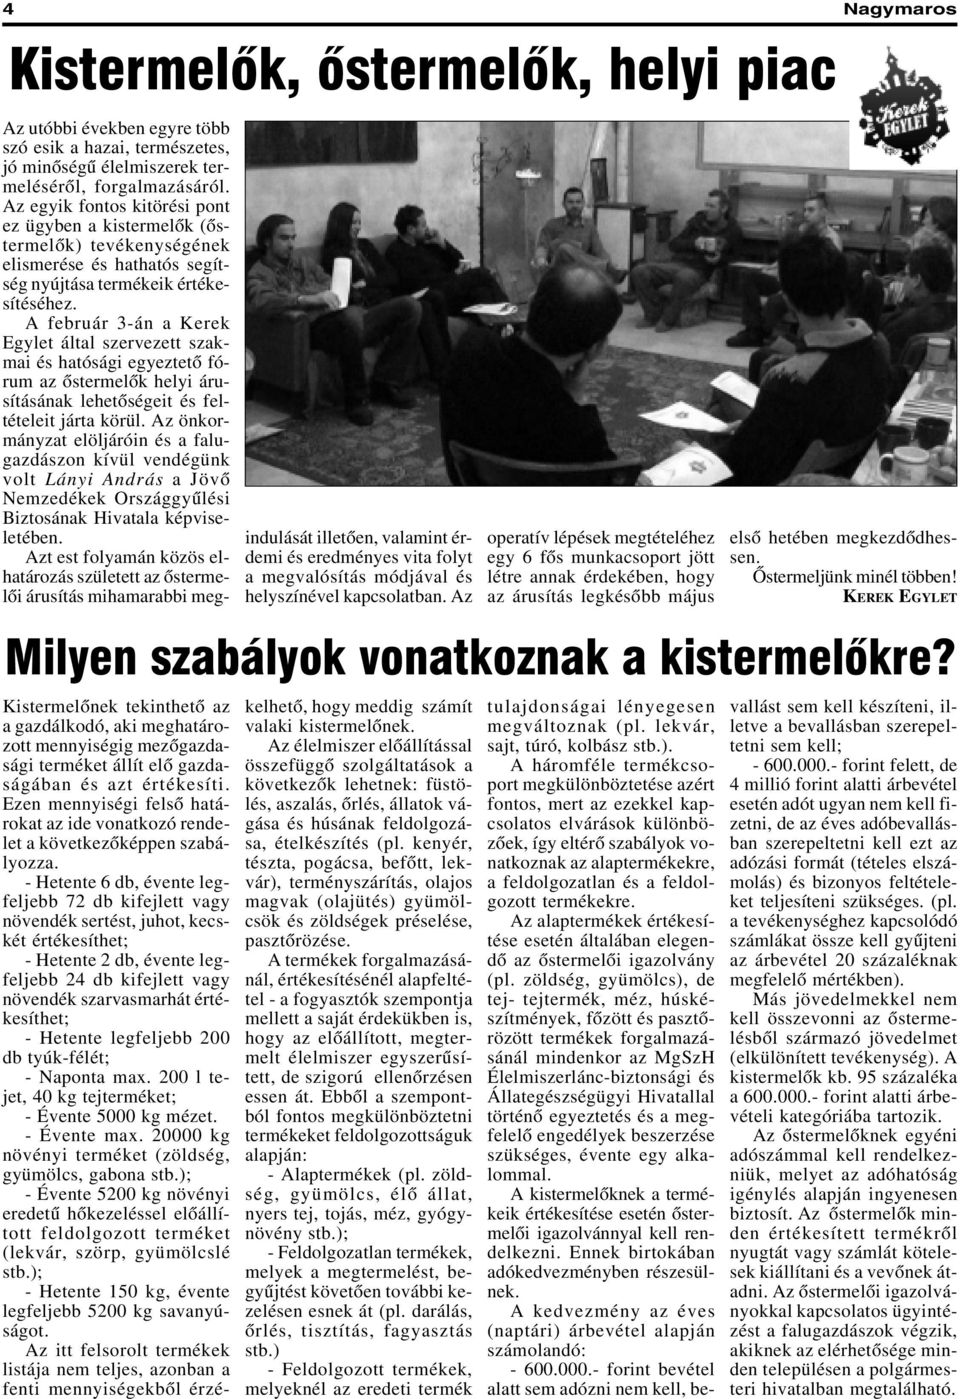 A február 3-án a Kerek Egylet által szervezett szakmai és hatósági egyeztetõ fórum az õstermelõk helyi árusításának lehetõségeit és feltételeit járta körül.